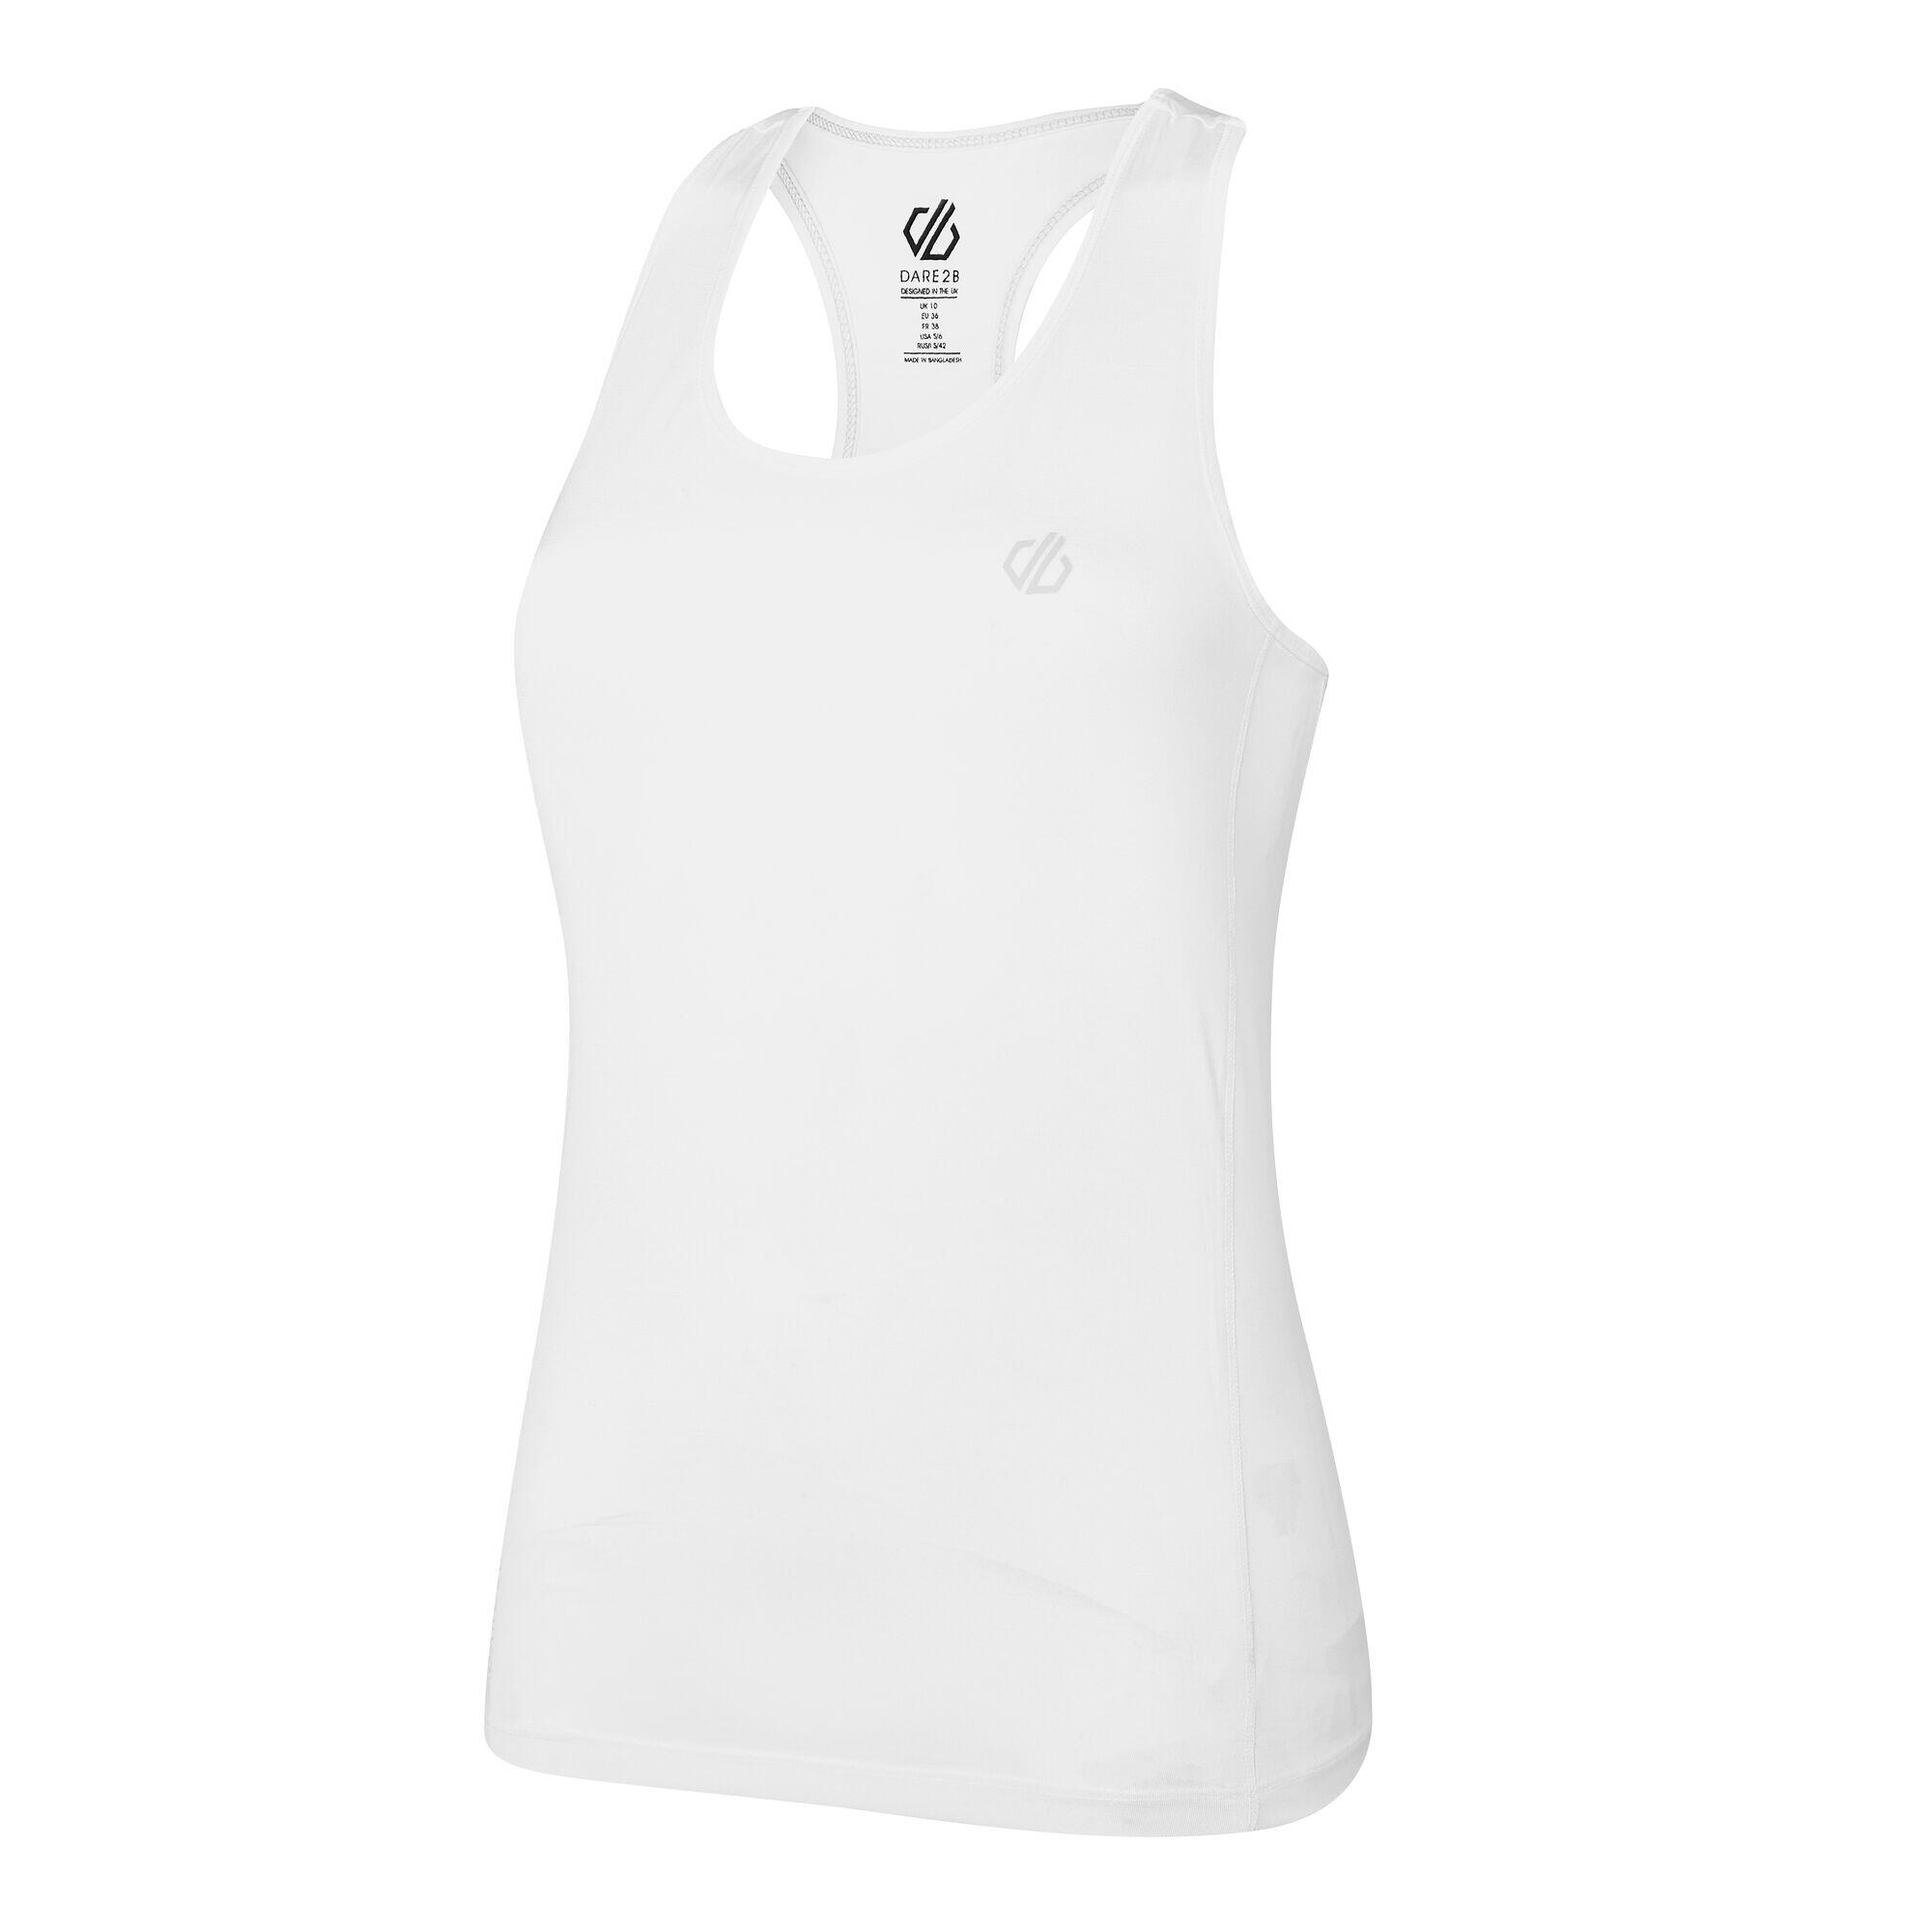 Modernize II Women's Fitness Sleeveless Vest - White 5/5